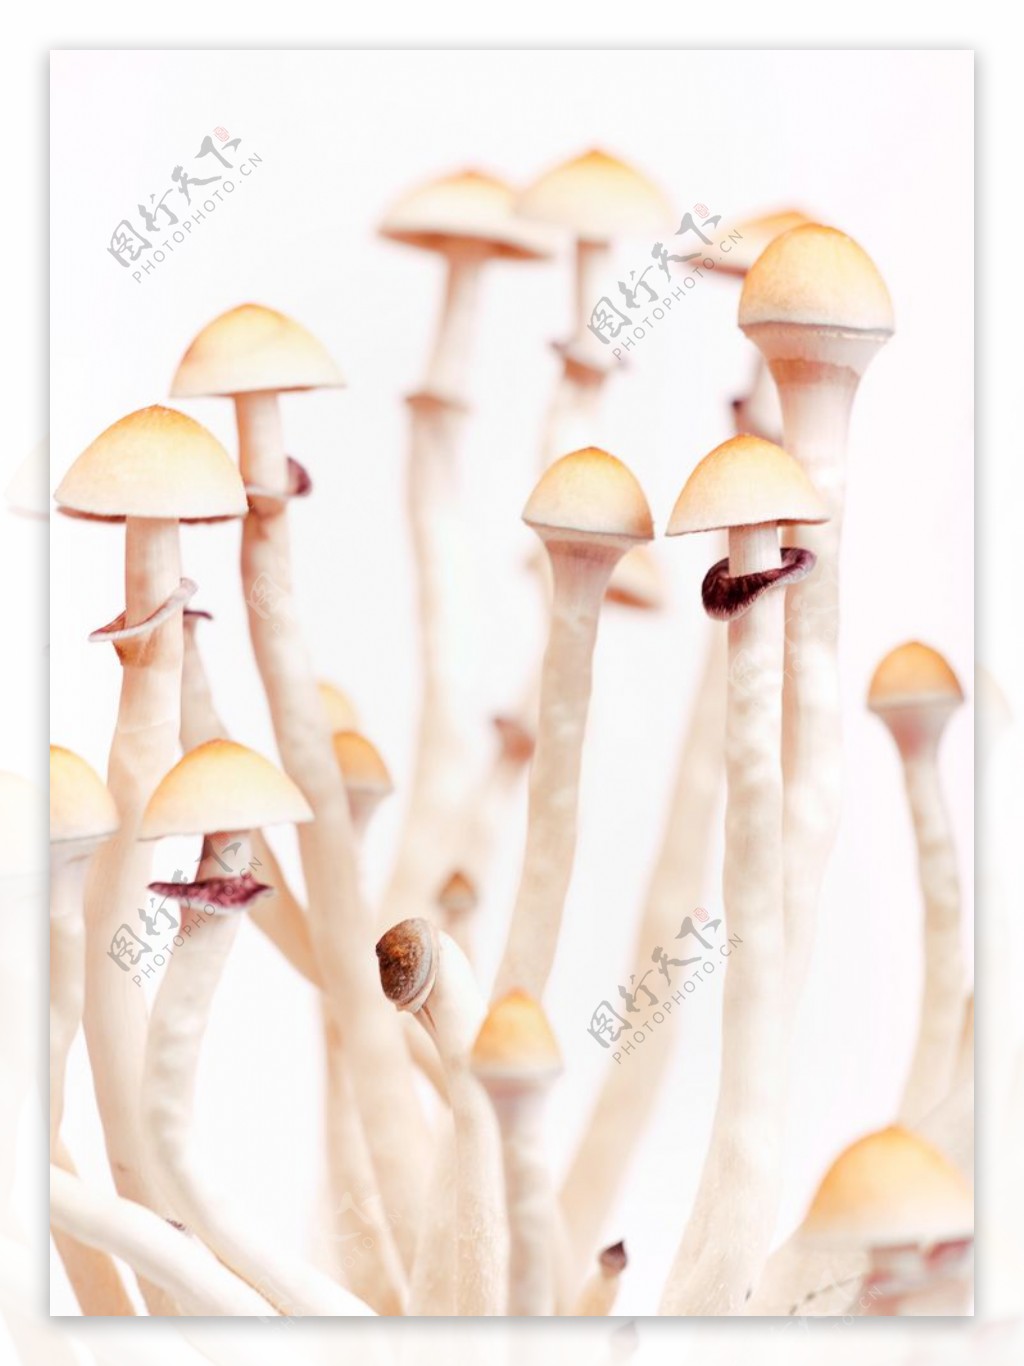 野蘑菇